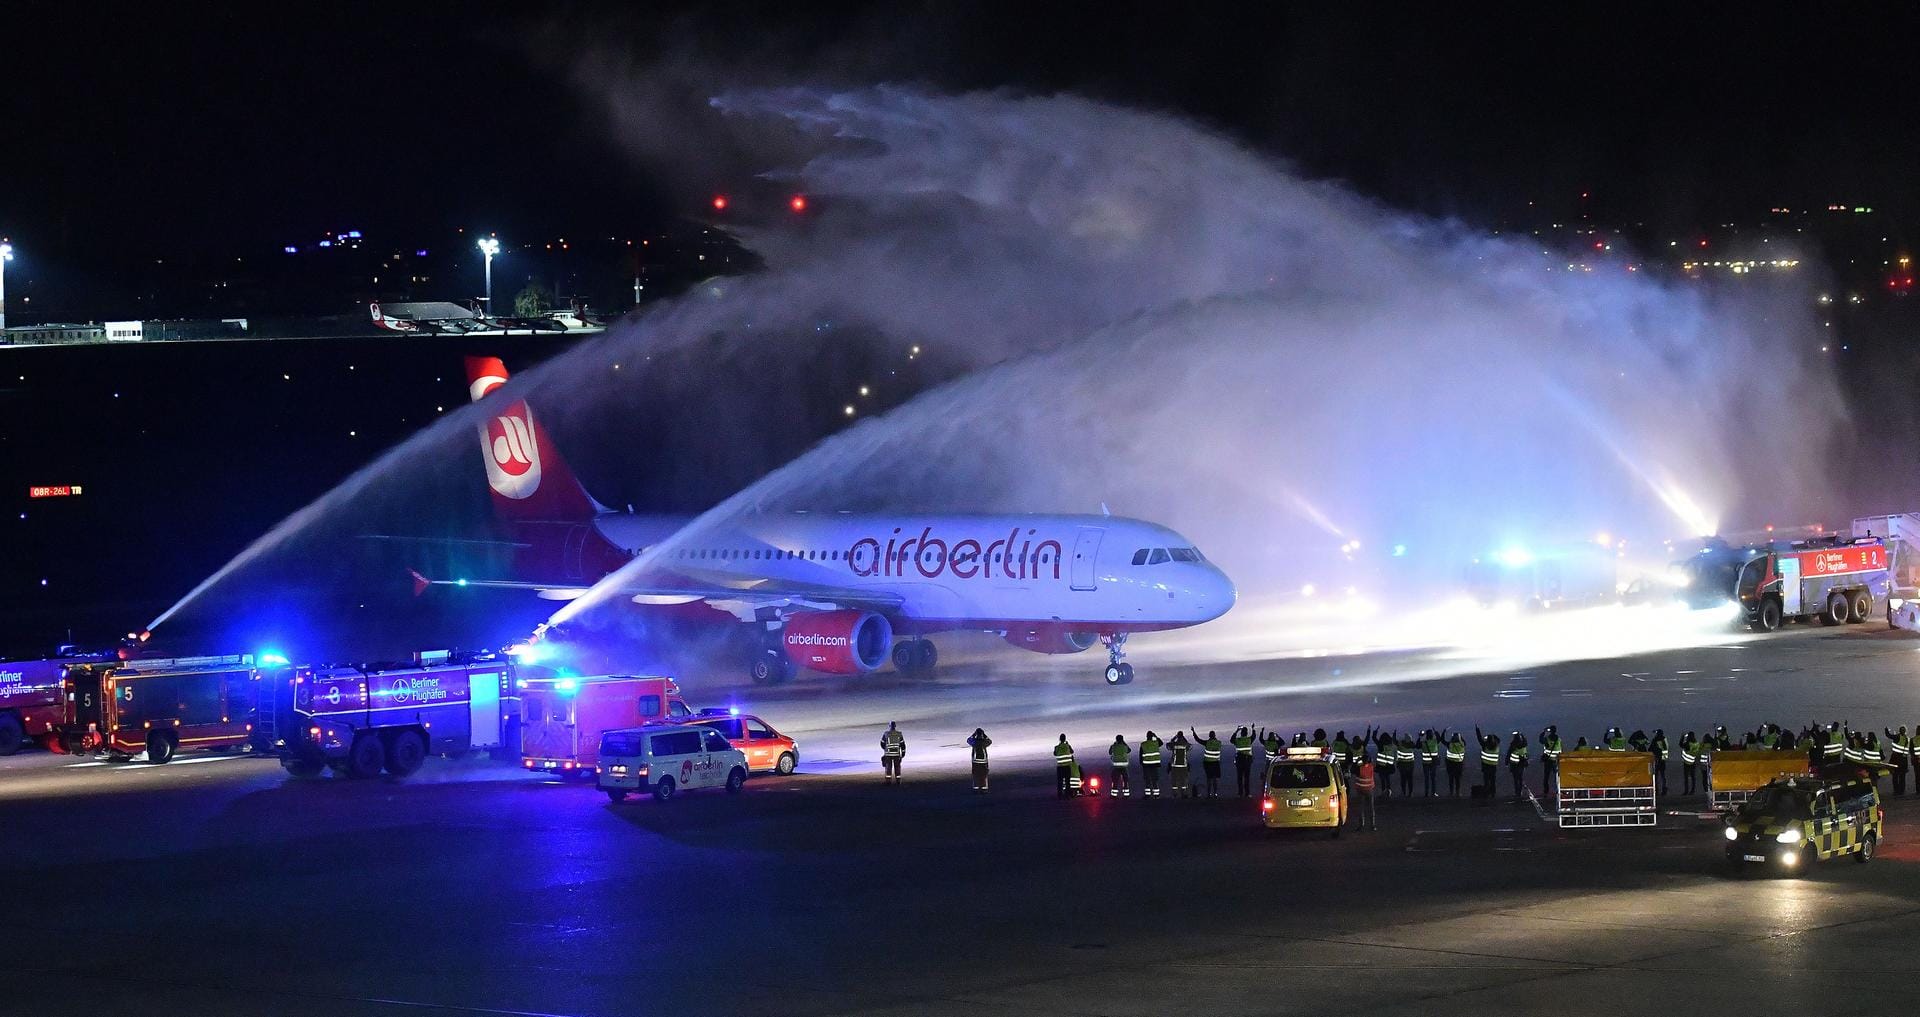 Die letzte Maschine der Fluggesellschaft Air Berlin ist am 27. Oktober in Berlin nach ihrem Flug von München gelandet und wird von der Feuerwehr auf dem Rollfeld mit Wasserfontänen empfangen.